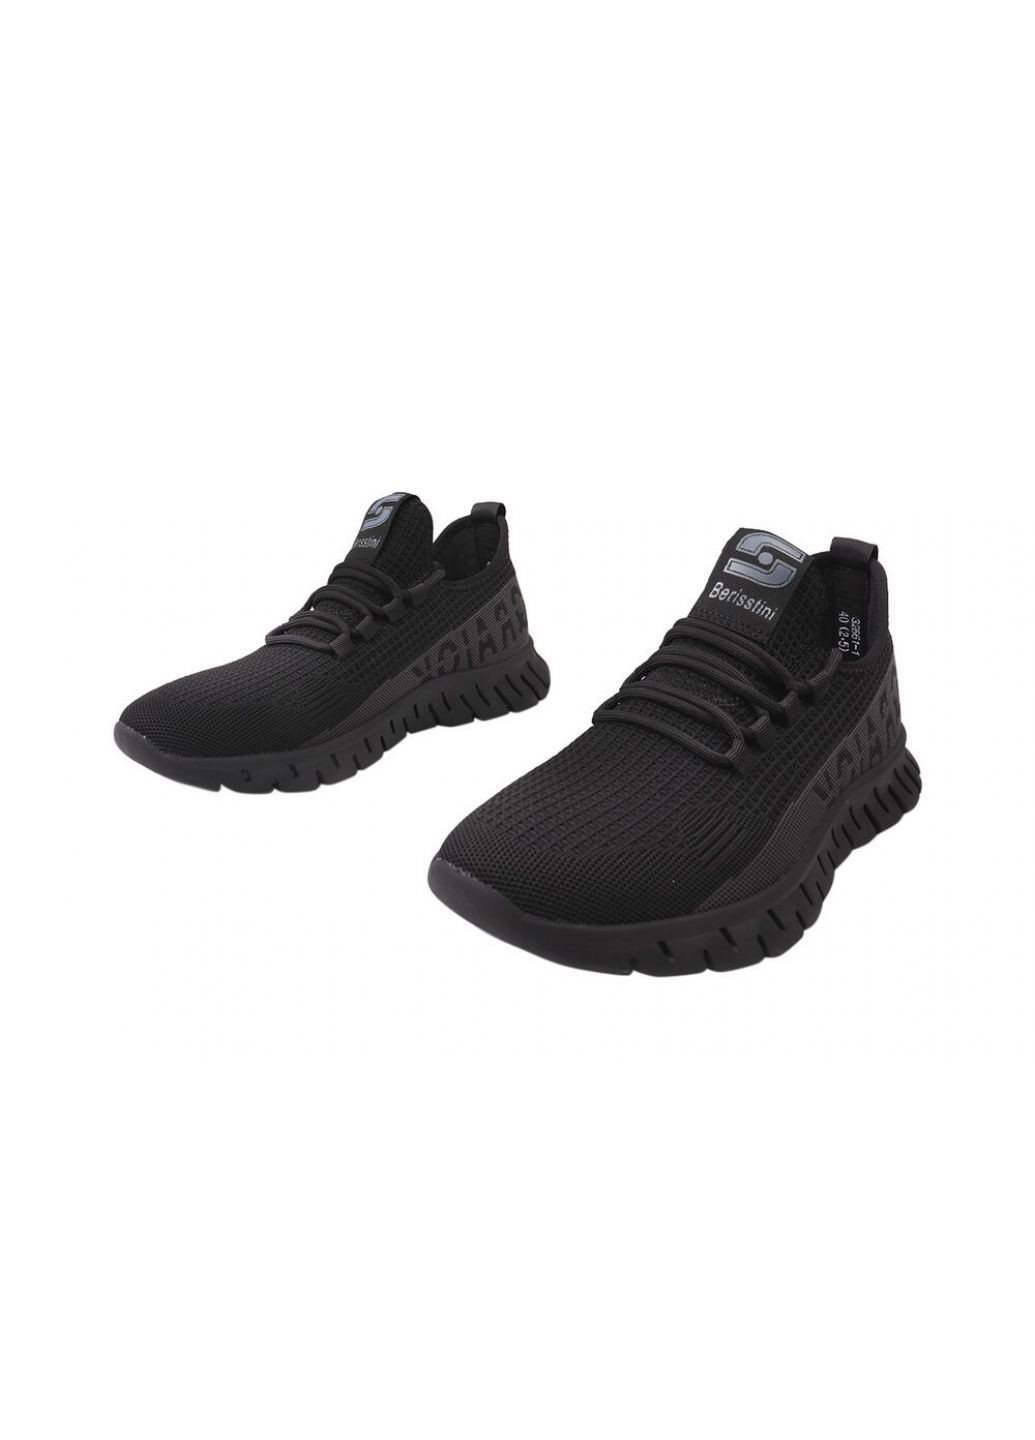 Черные кроссовки мужские из текстиля, на низком ходу, на шнуровке, черные, Berisstini 18-21/22DK